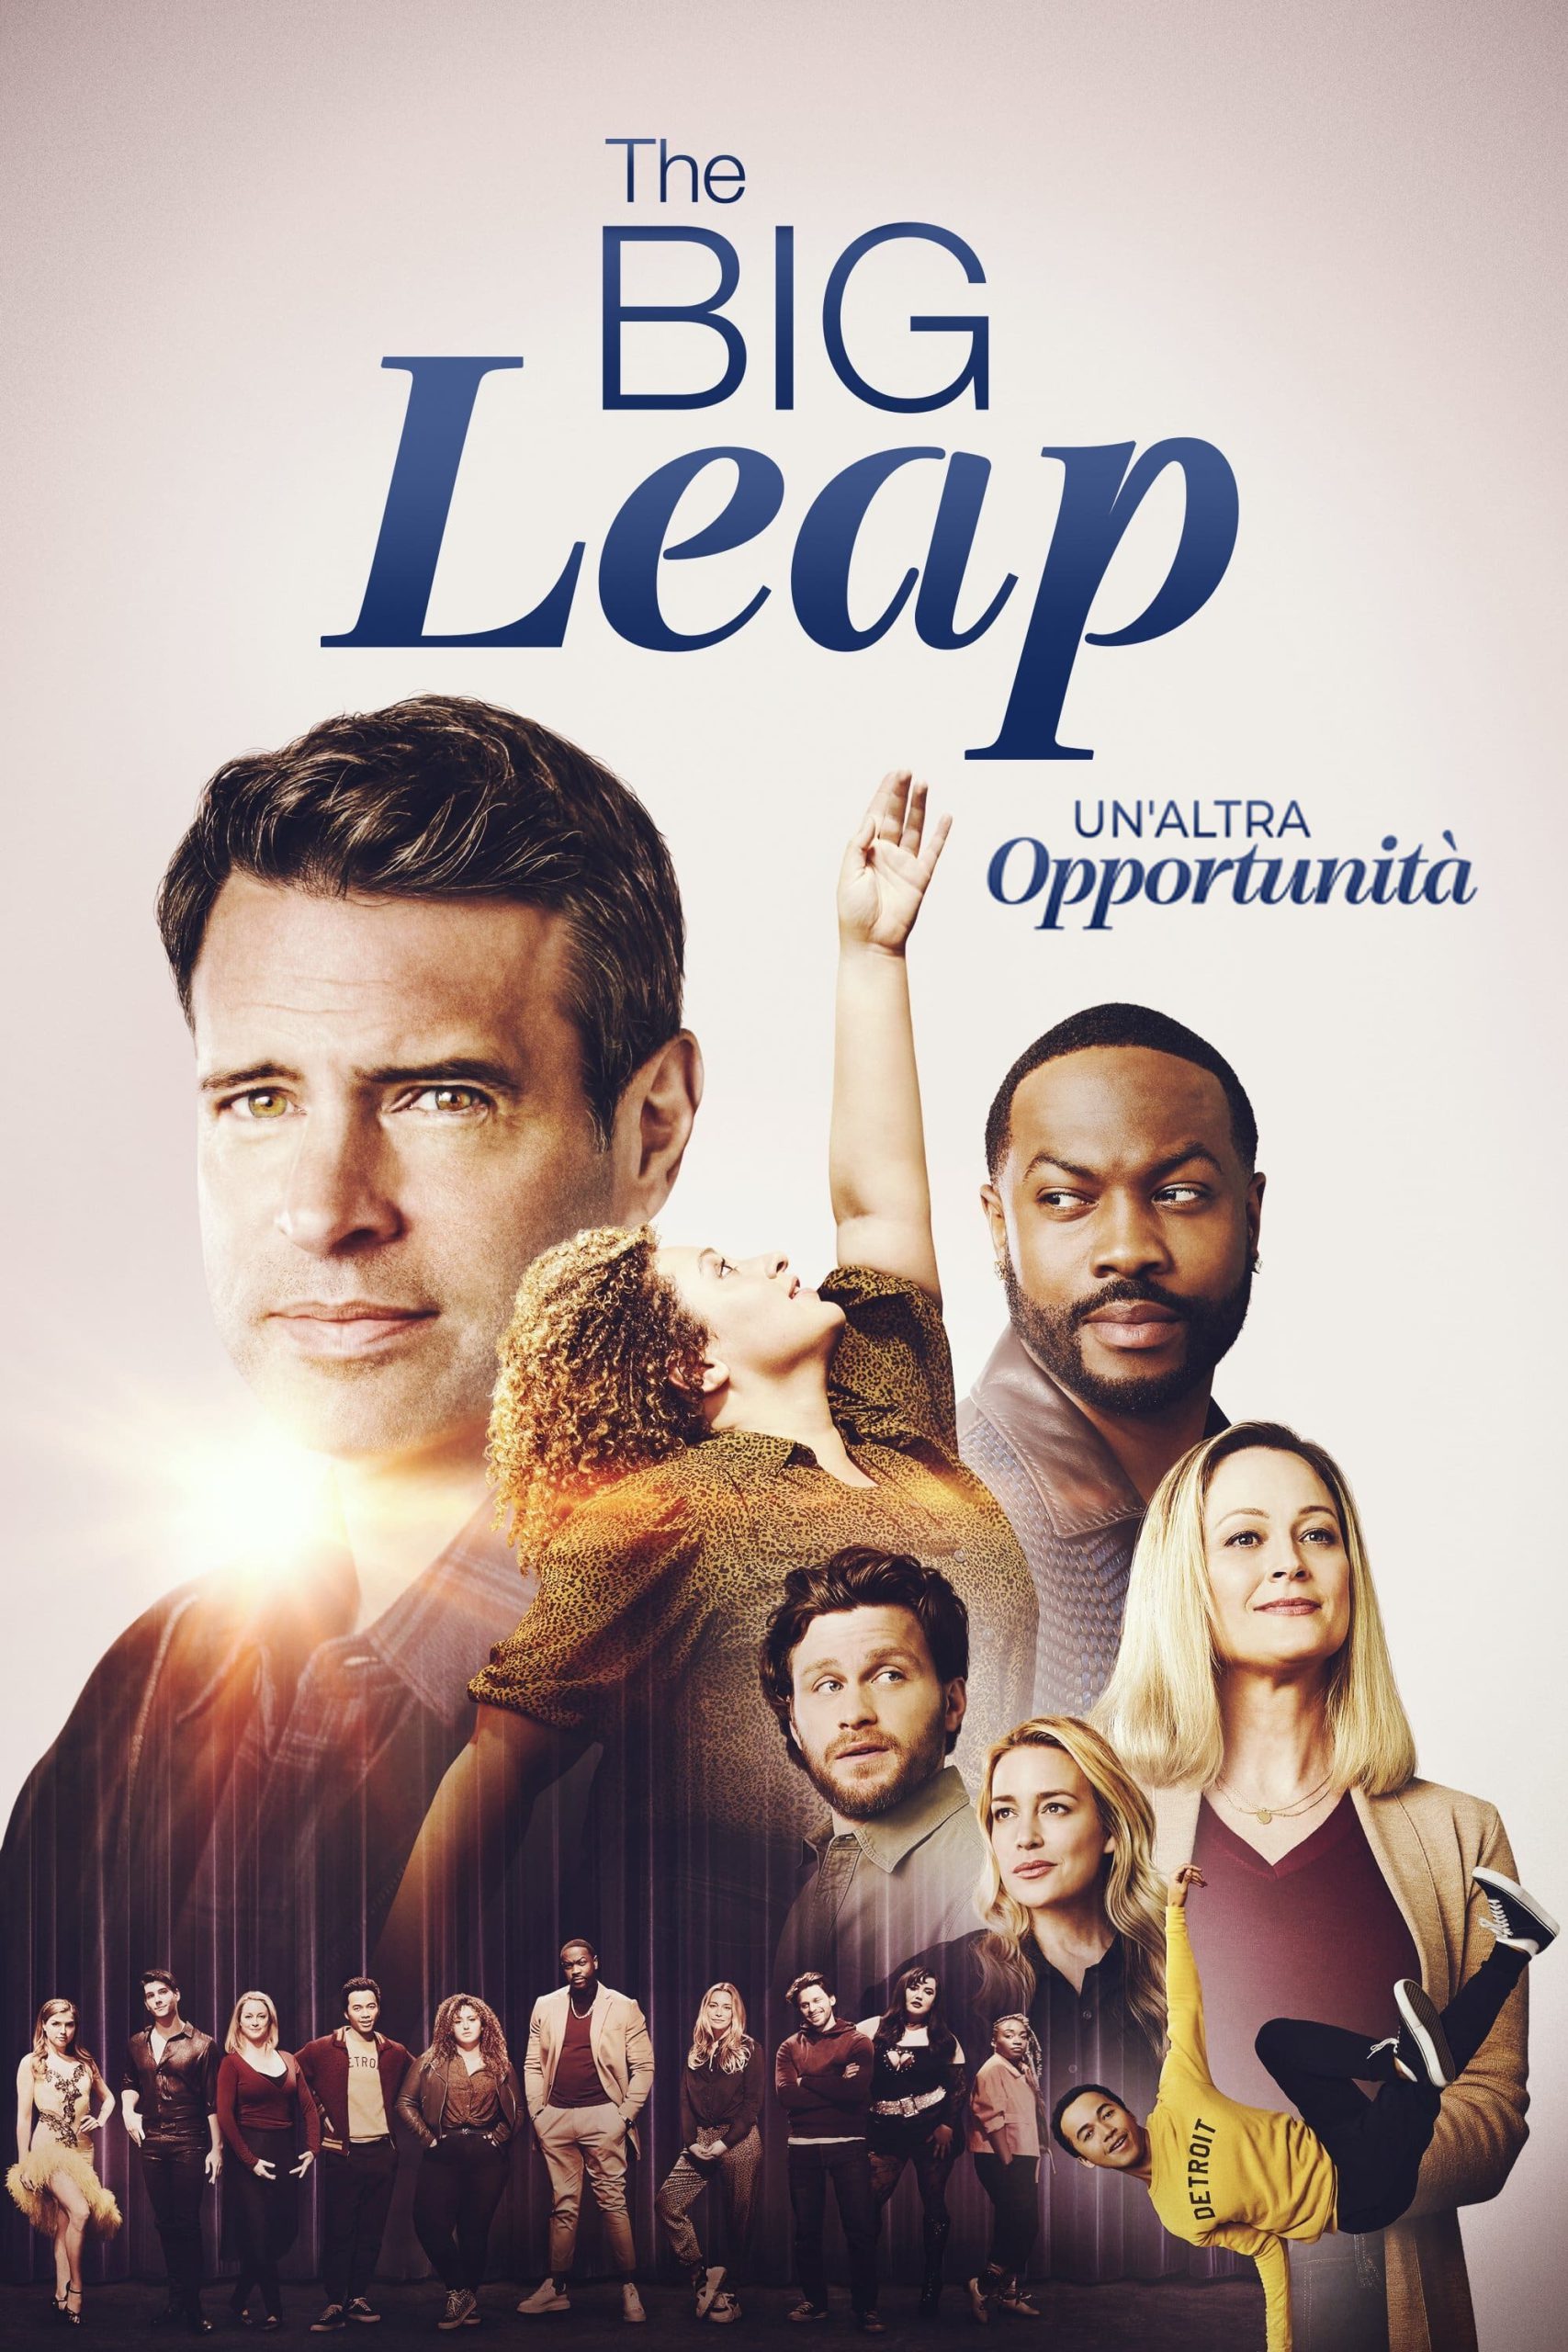 The Big Leap – Un’altra opportunità